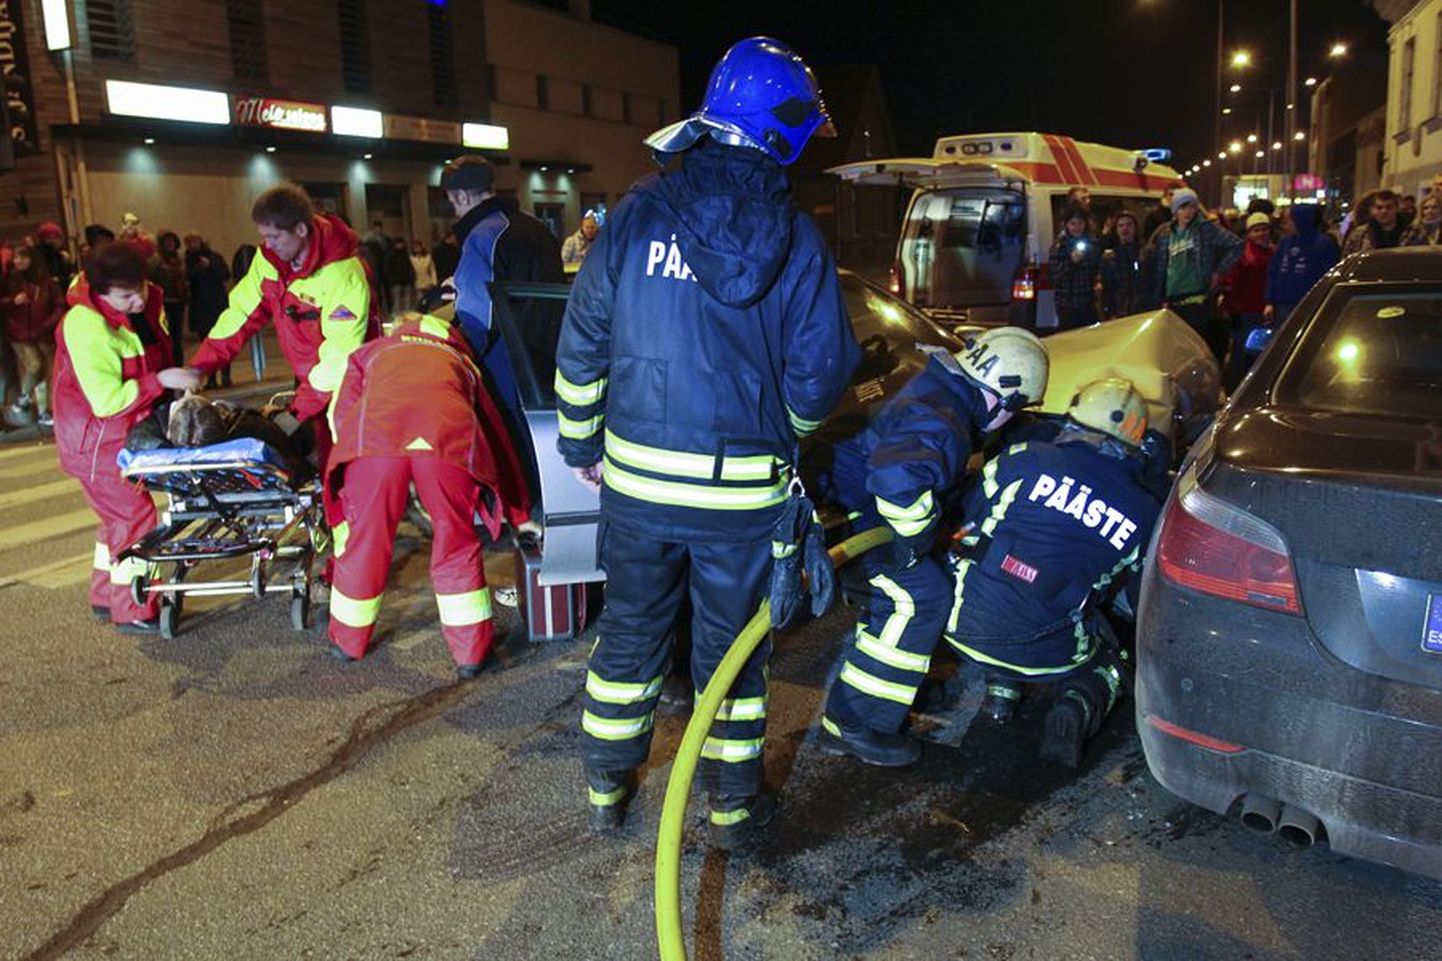 Liiklusõnnetus, millega puutusid kokku nii politseinikud, päästjad kui haiglatöötajad, juhtus Viljandis Tallinna ja Jakobsoni tänava ristmikul uue aasta esimesel tunnil.